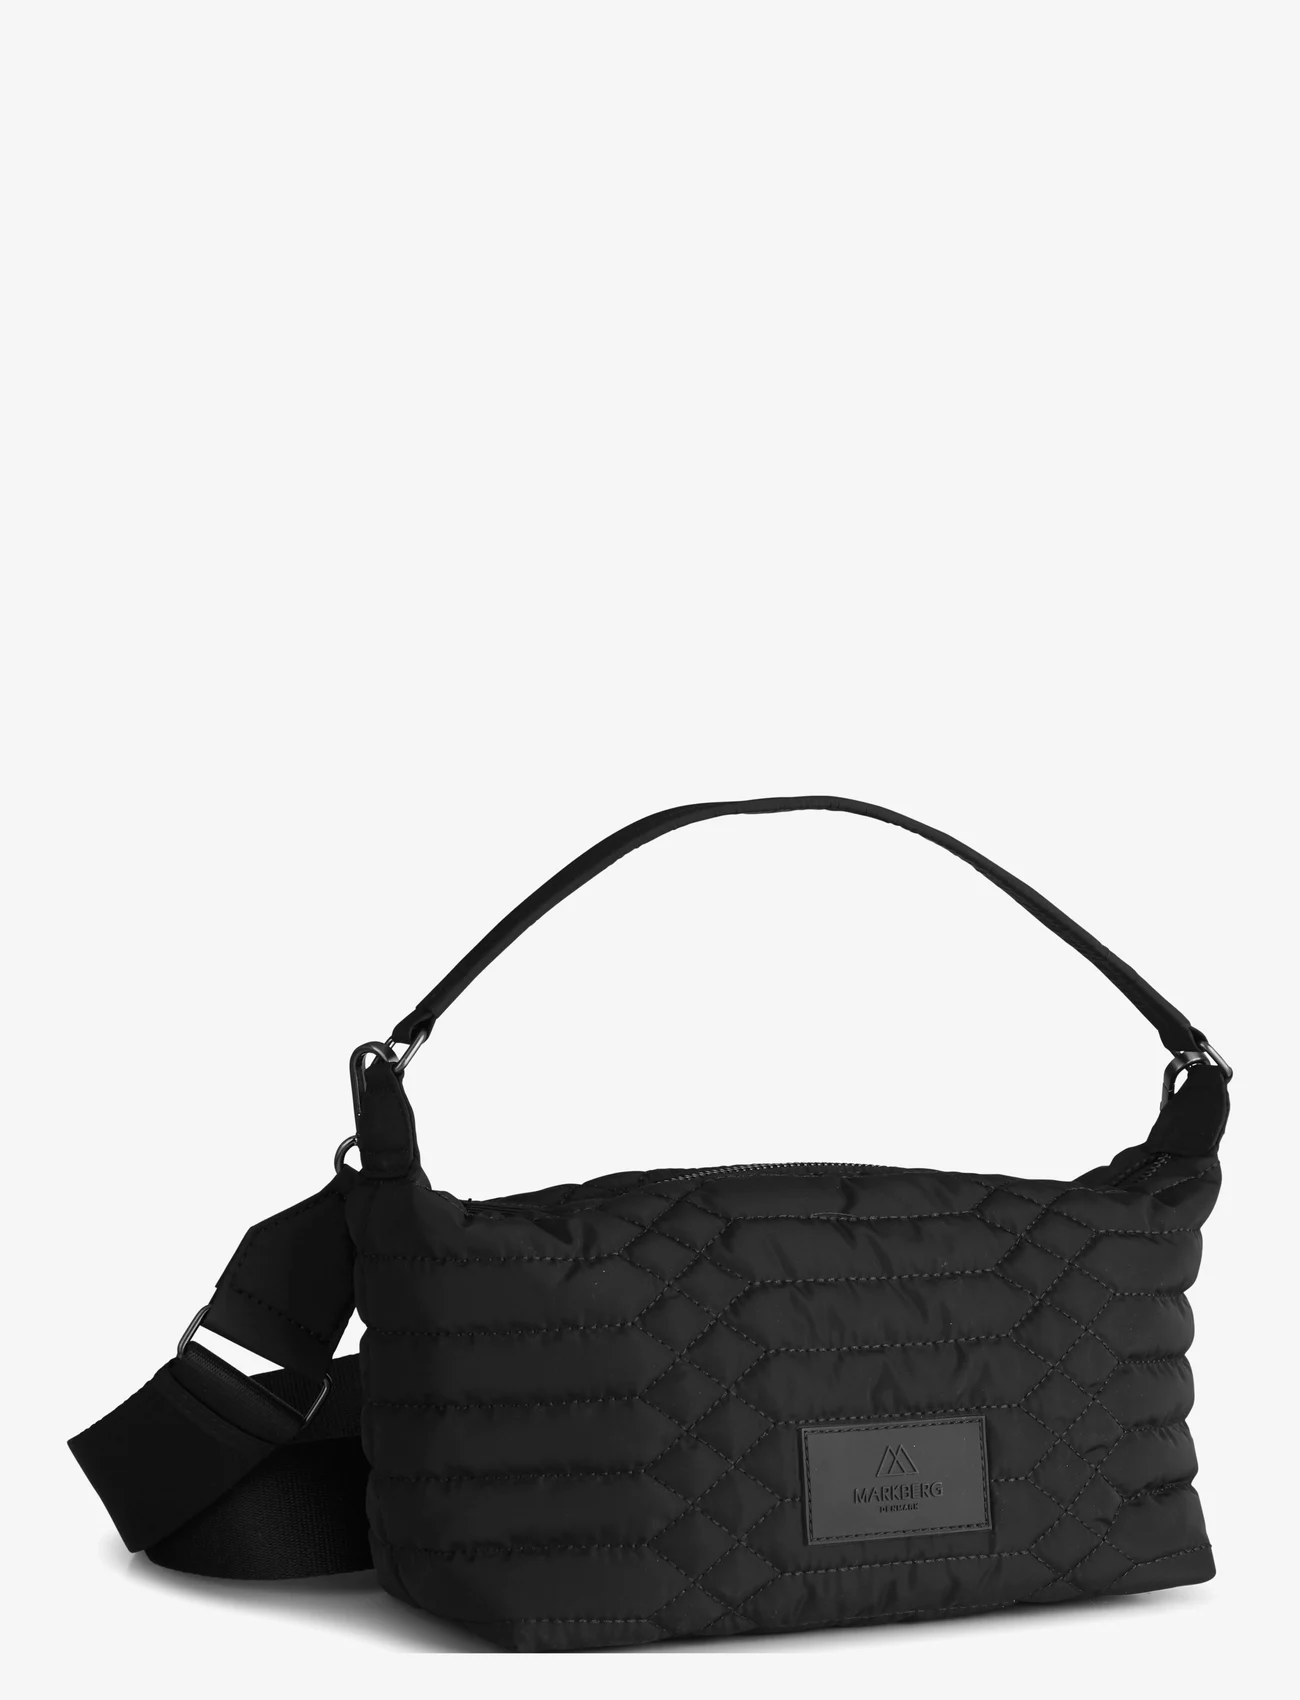 Markberg - LotusMBG Bag, Snake Quilt - odzież imprezowa w cenach outletowych - black w/black - 1